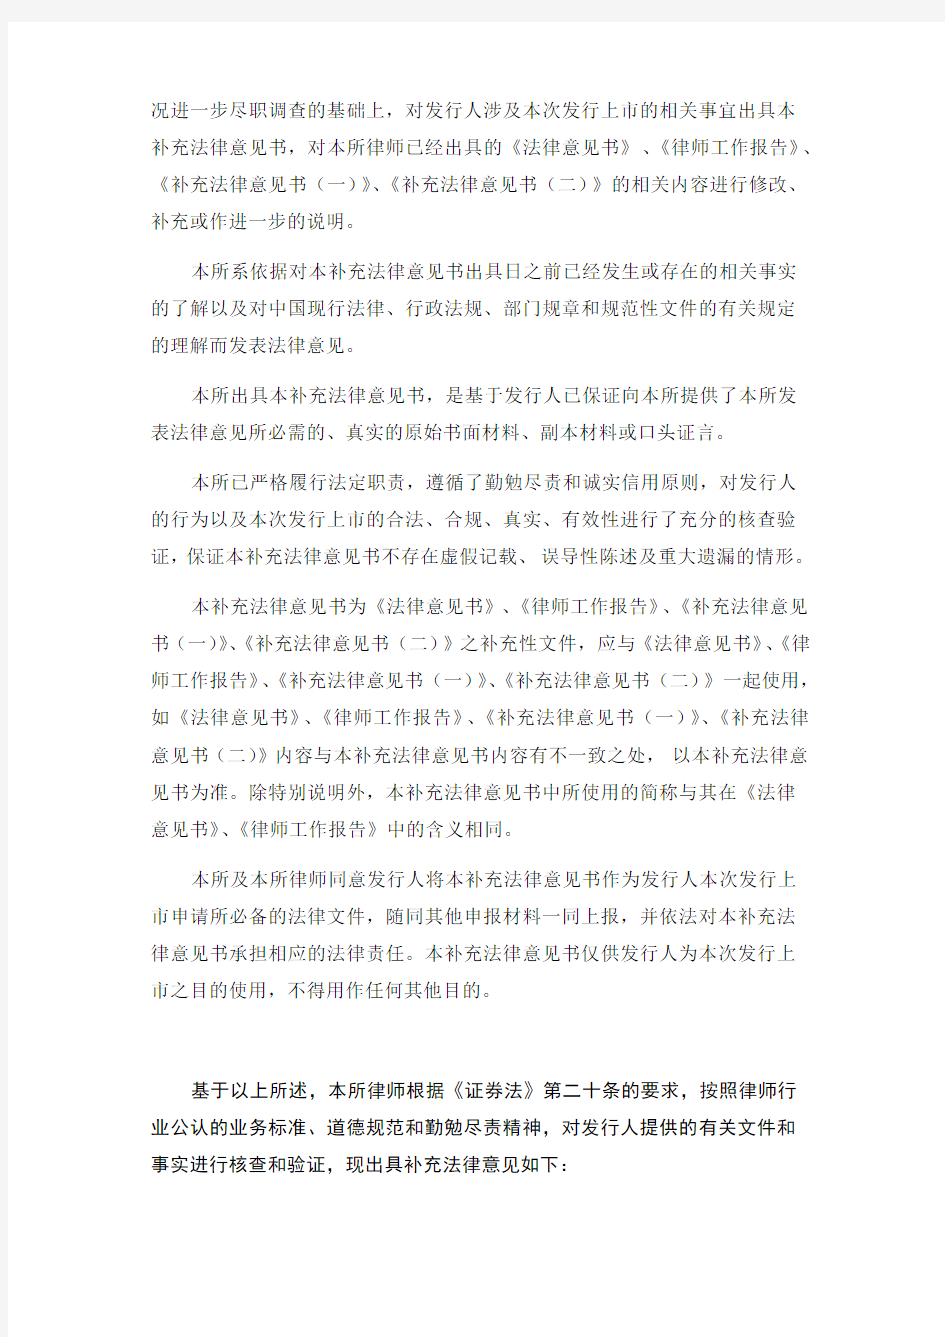 美亚柏科：北京市竞天公诚律师事务所关于公司首次公开发行股票并在创业板上市的补充法 2011-02-25